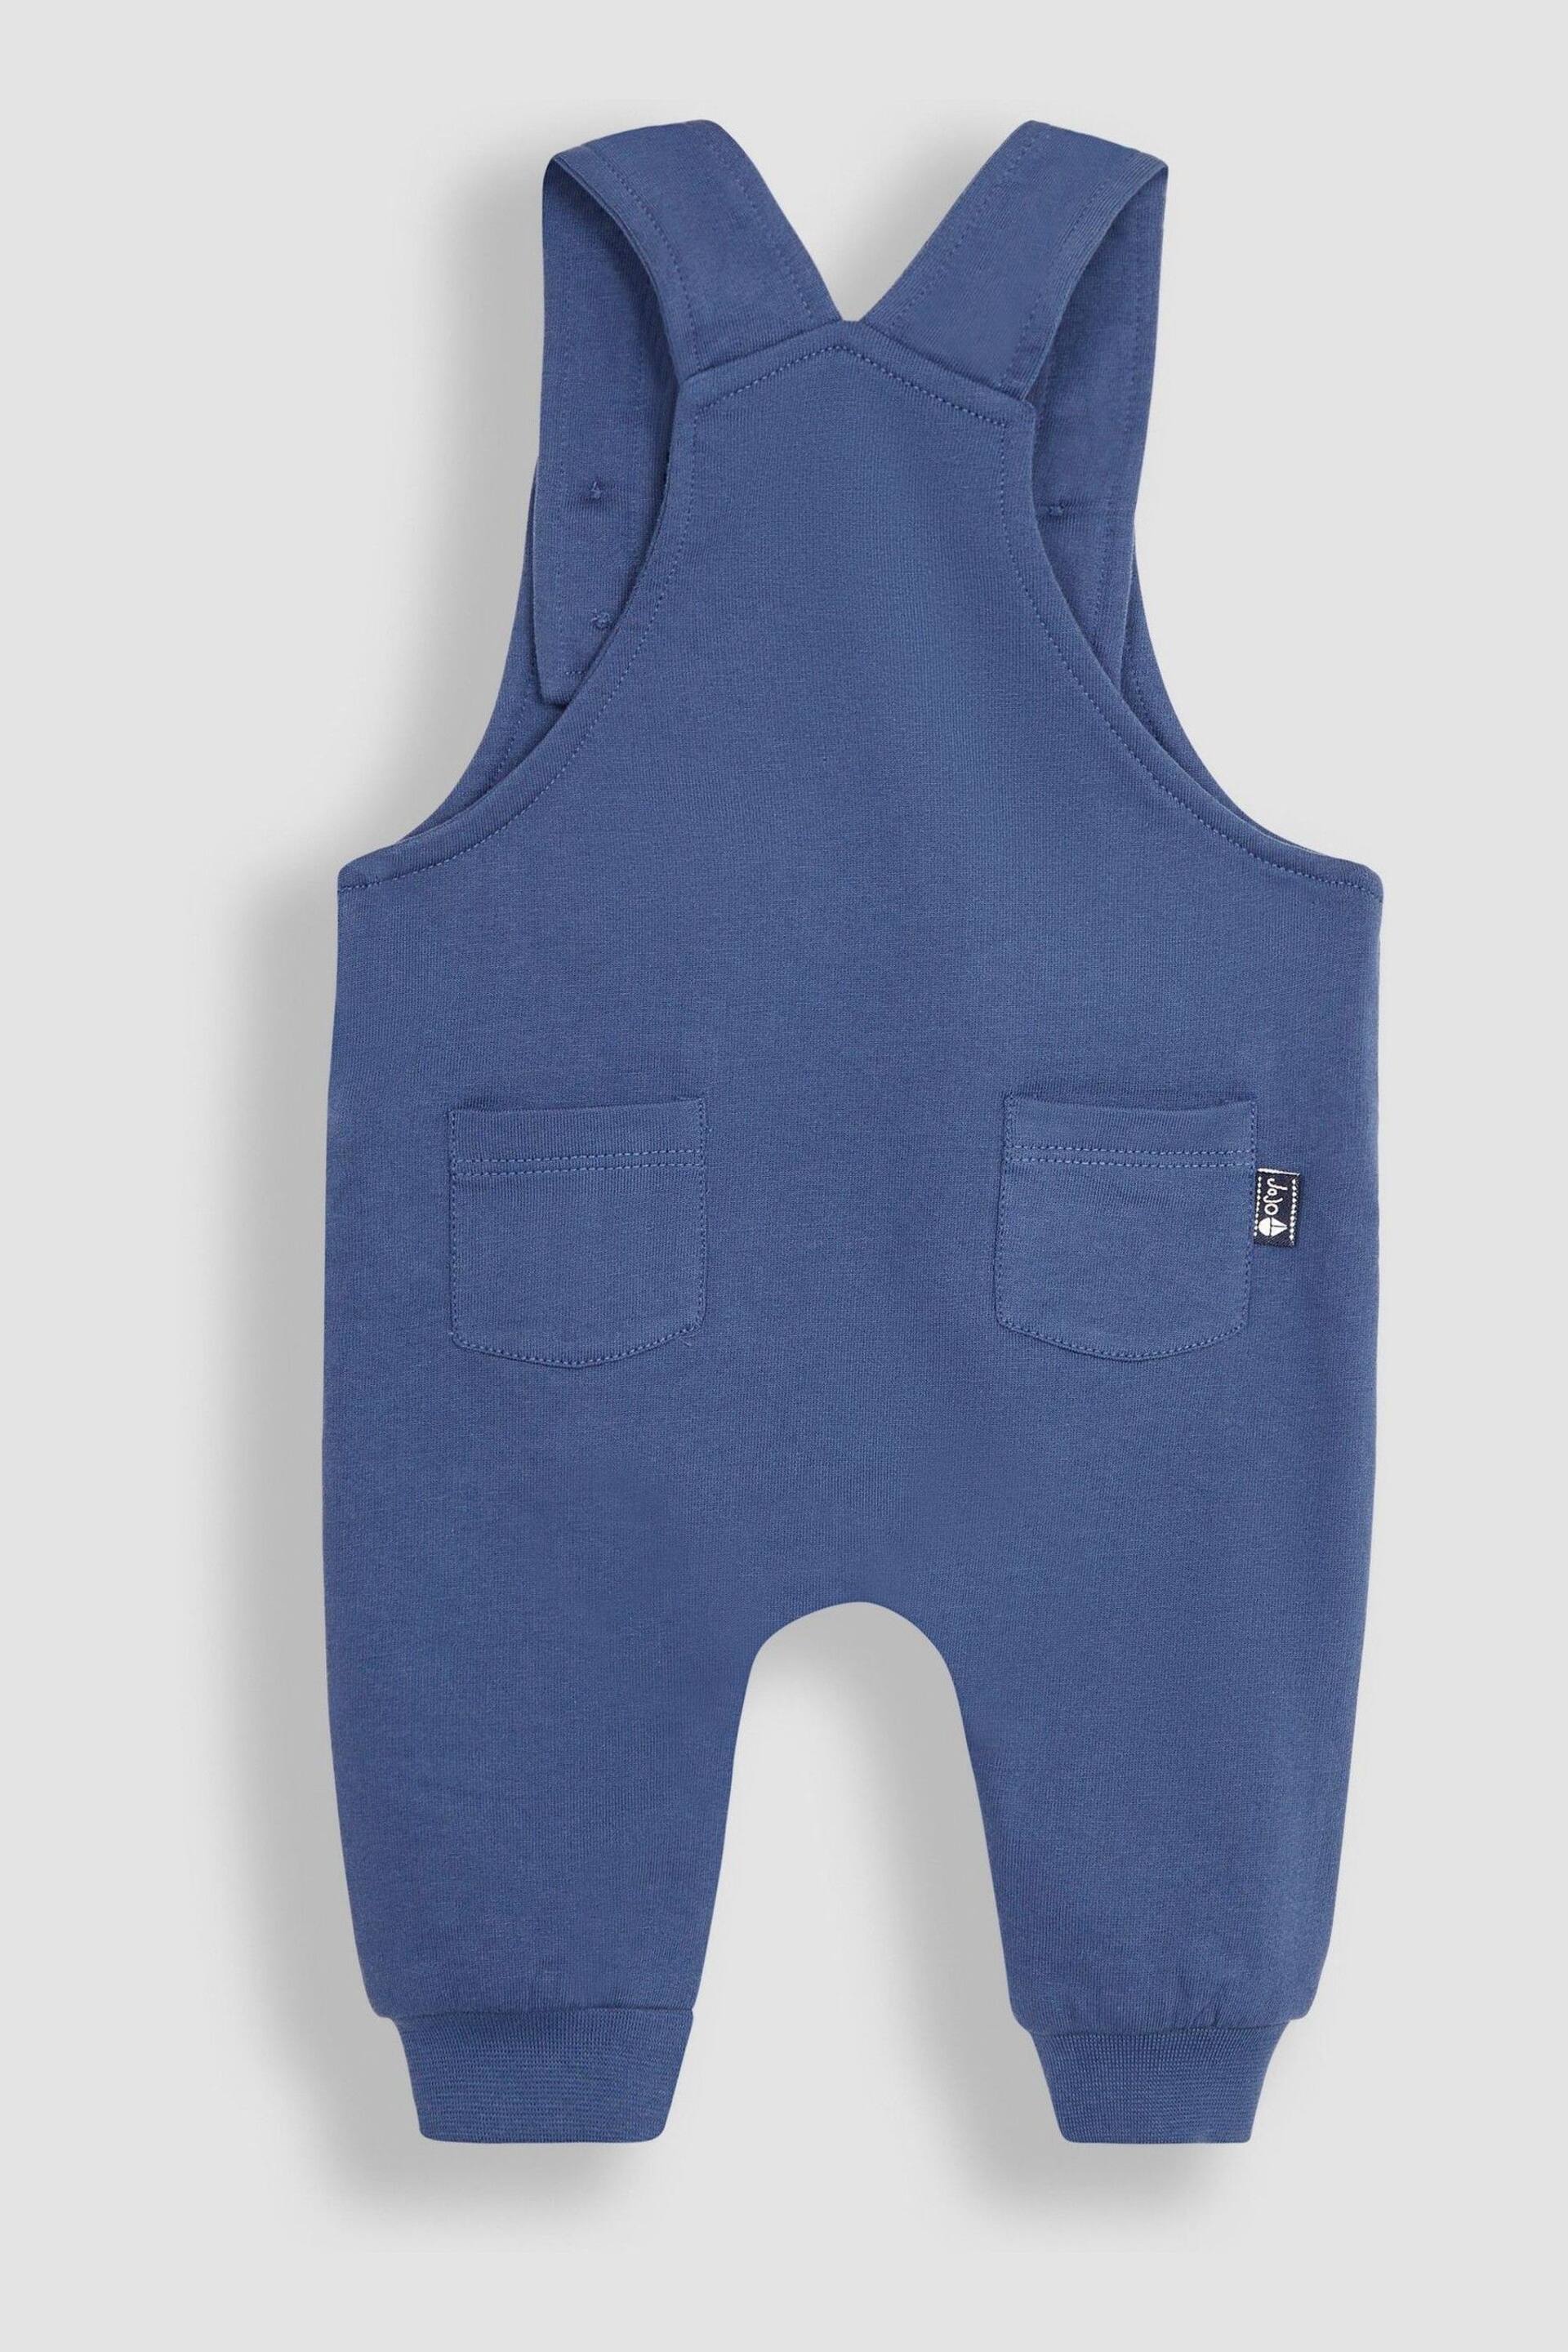 JoJo Maman Bébé Navy Blue Shark Appliqué Trouser Dungarees & T-Shirt Set - Image 4 of 7